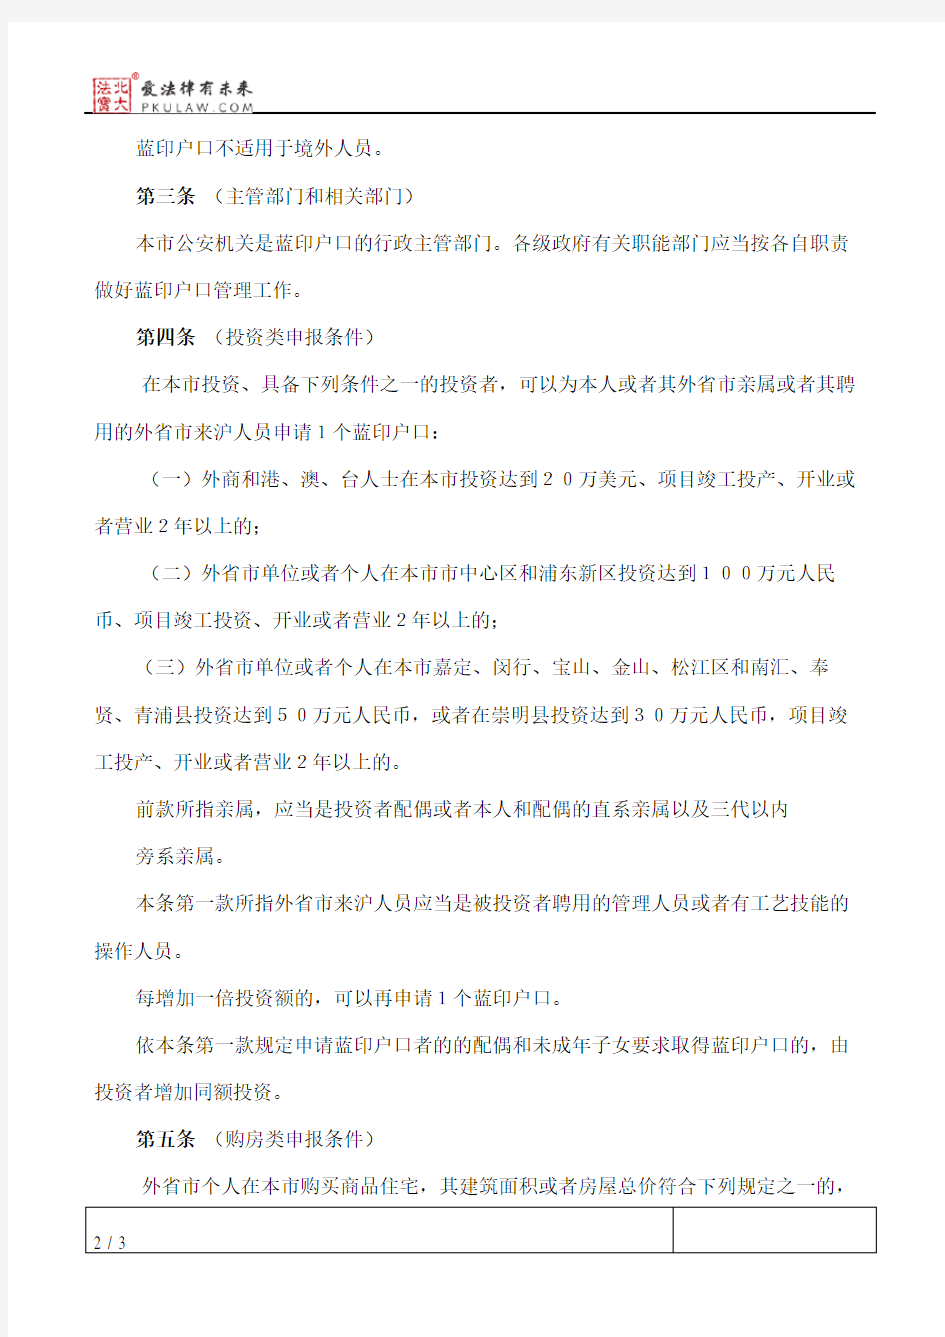 上海市蓝印户口管理暂行规定(1998修正)